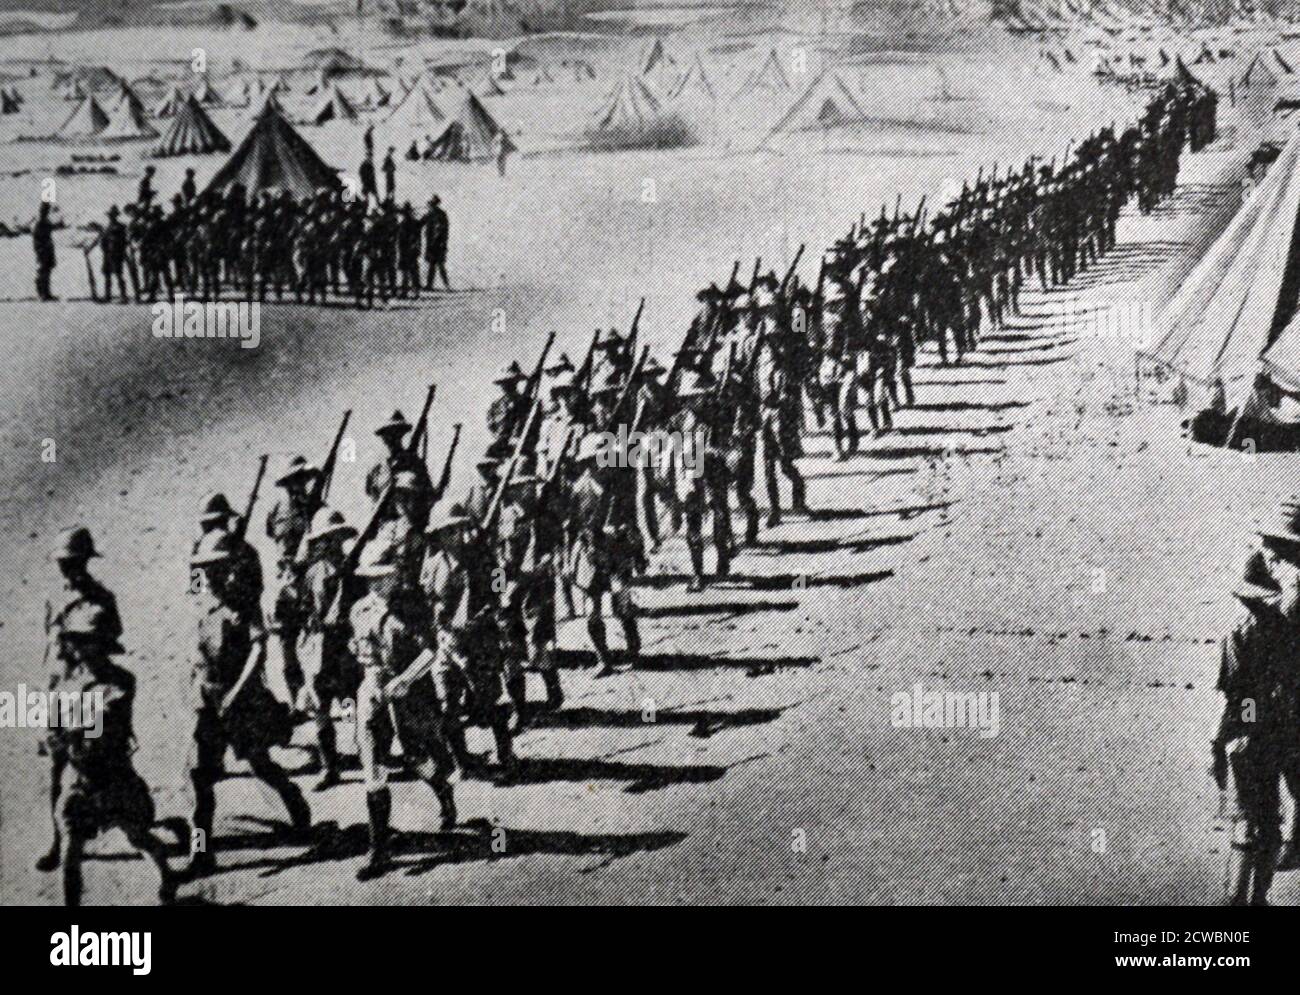 Fotografia in bianco e nero della seconda guerra mondiale (1939-1945); la guerra in Africa settentrionale. Rinforzi britannici nel deserto fuori del Cairo. Foto Stock